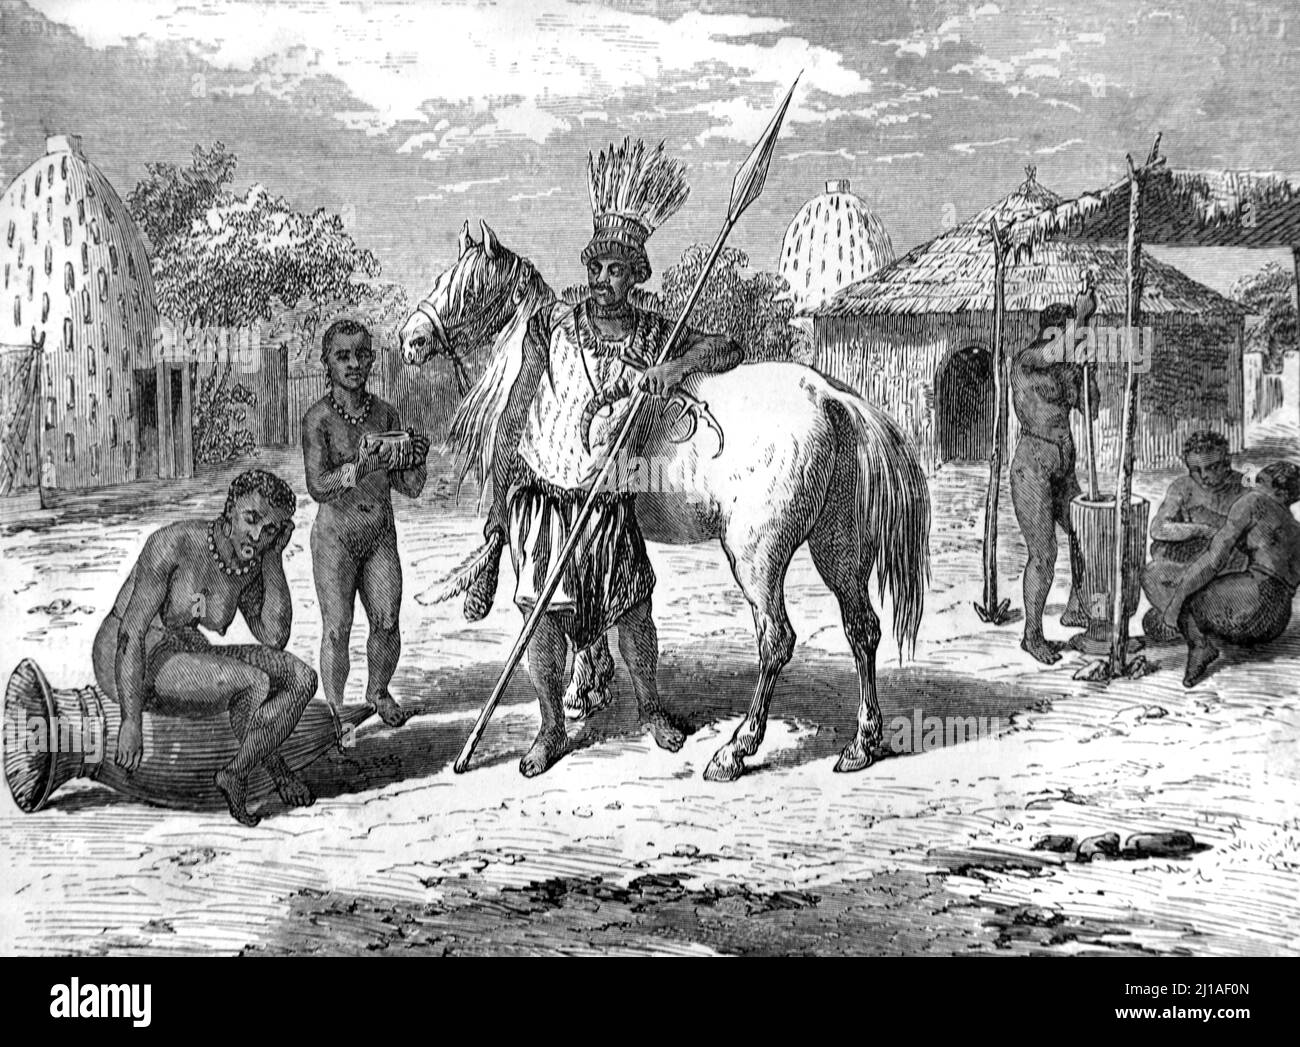 Mosgovien Stammesführer in einem Dorf in Niger Afrika. Vintage Illustration oder Gravur 1860. Stockfoto